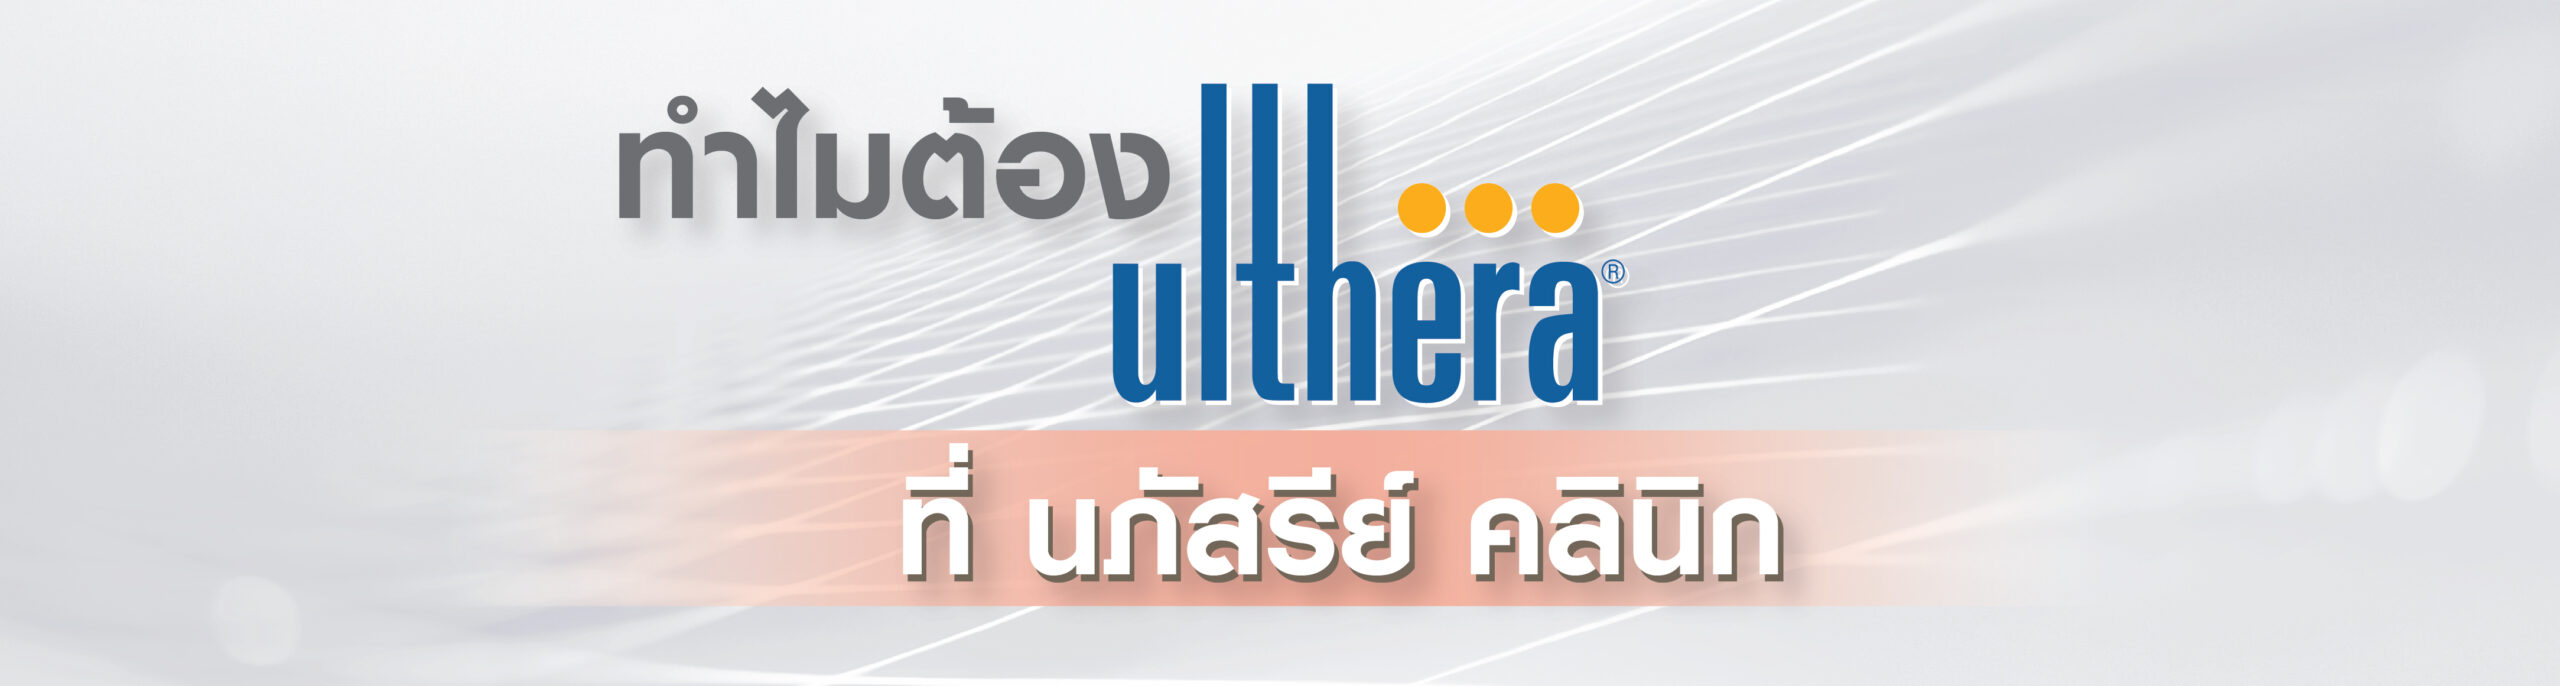 ulthera web2-01